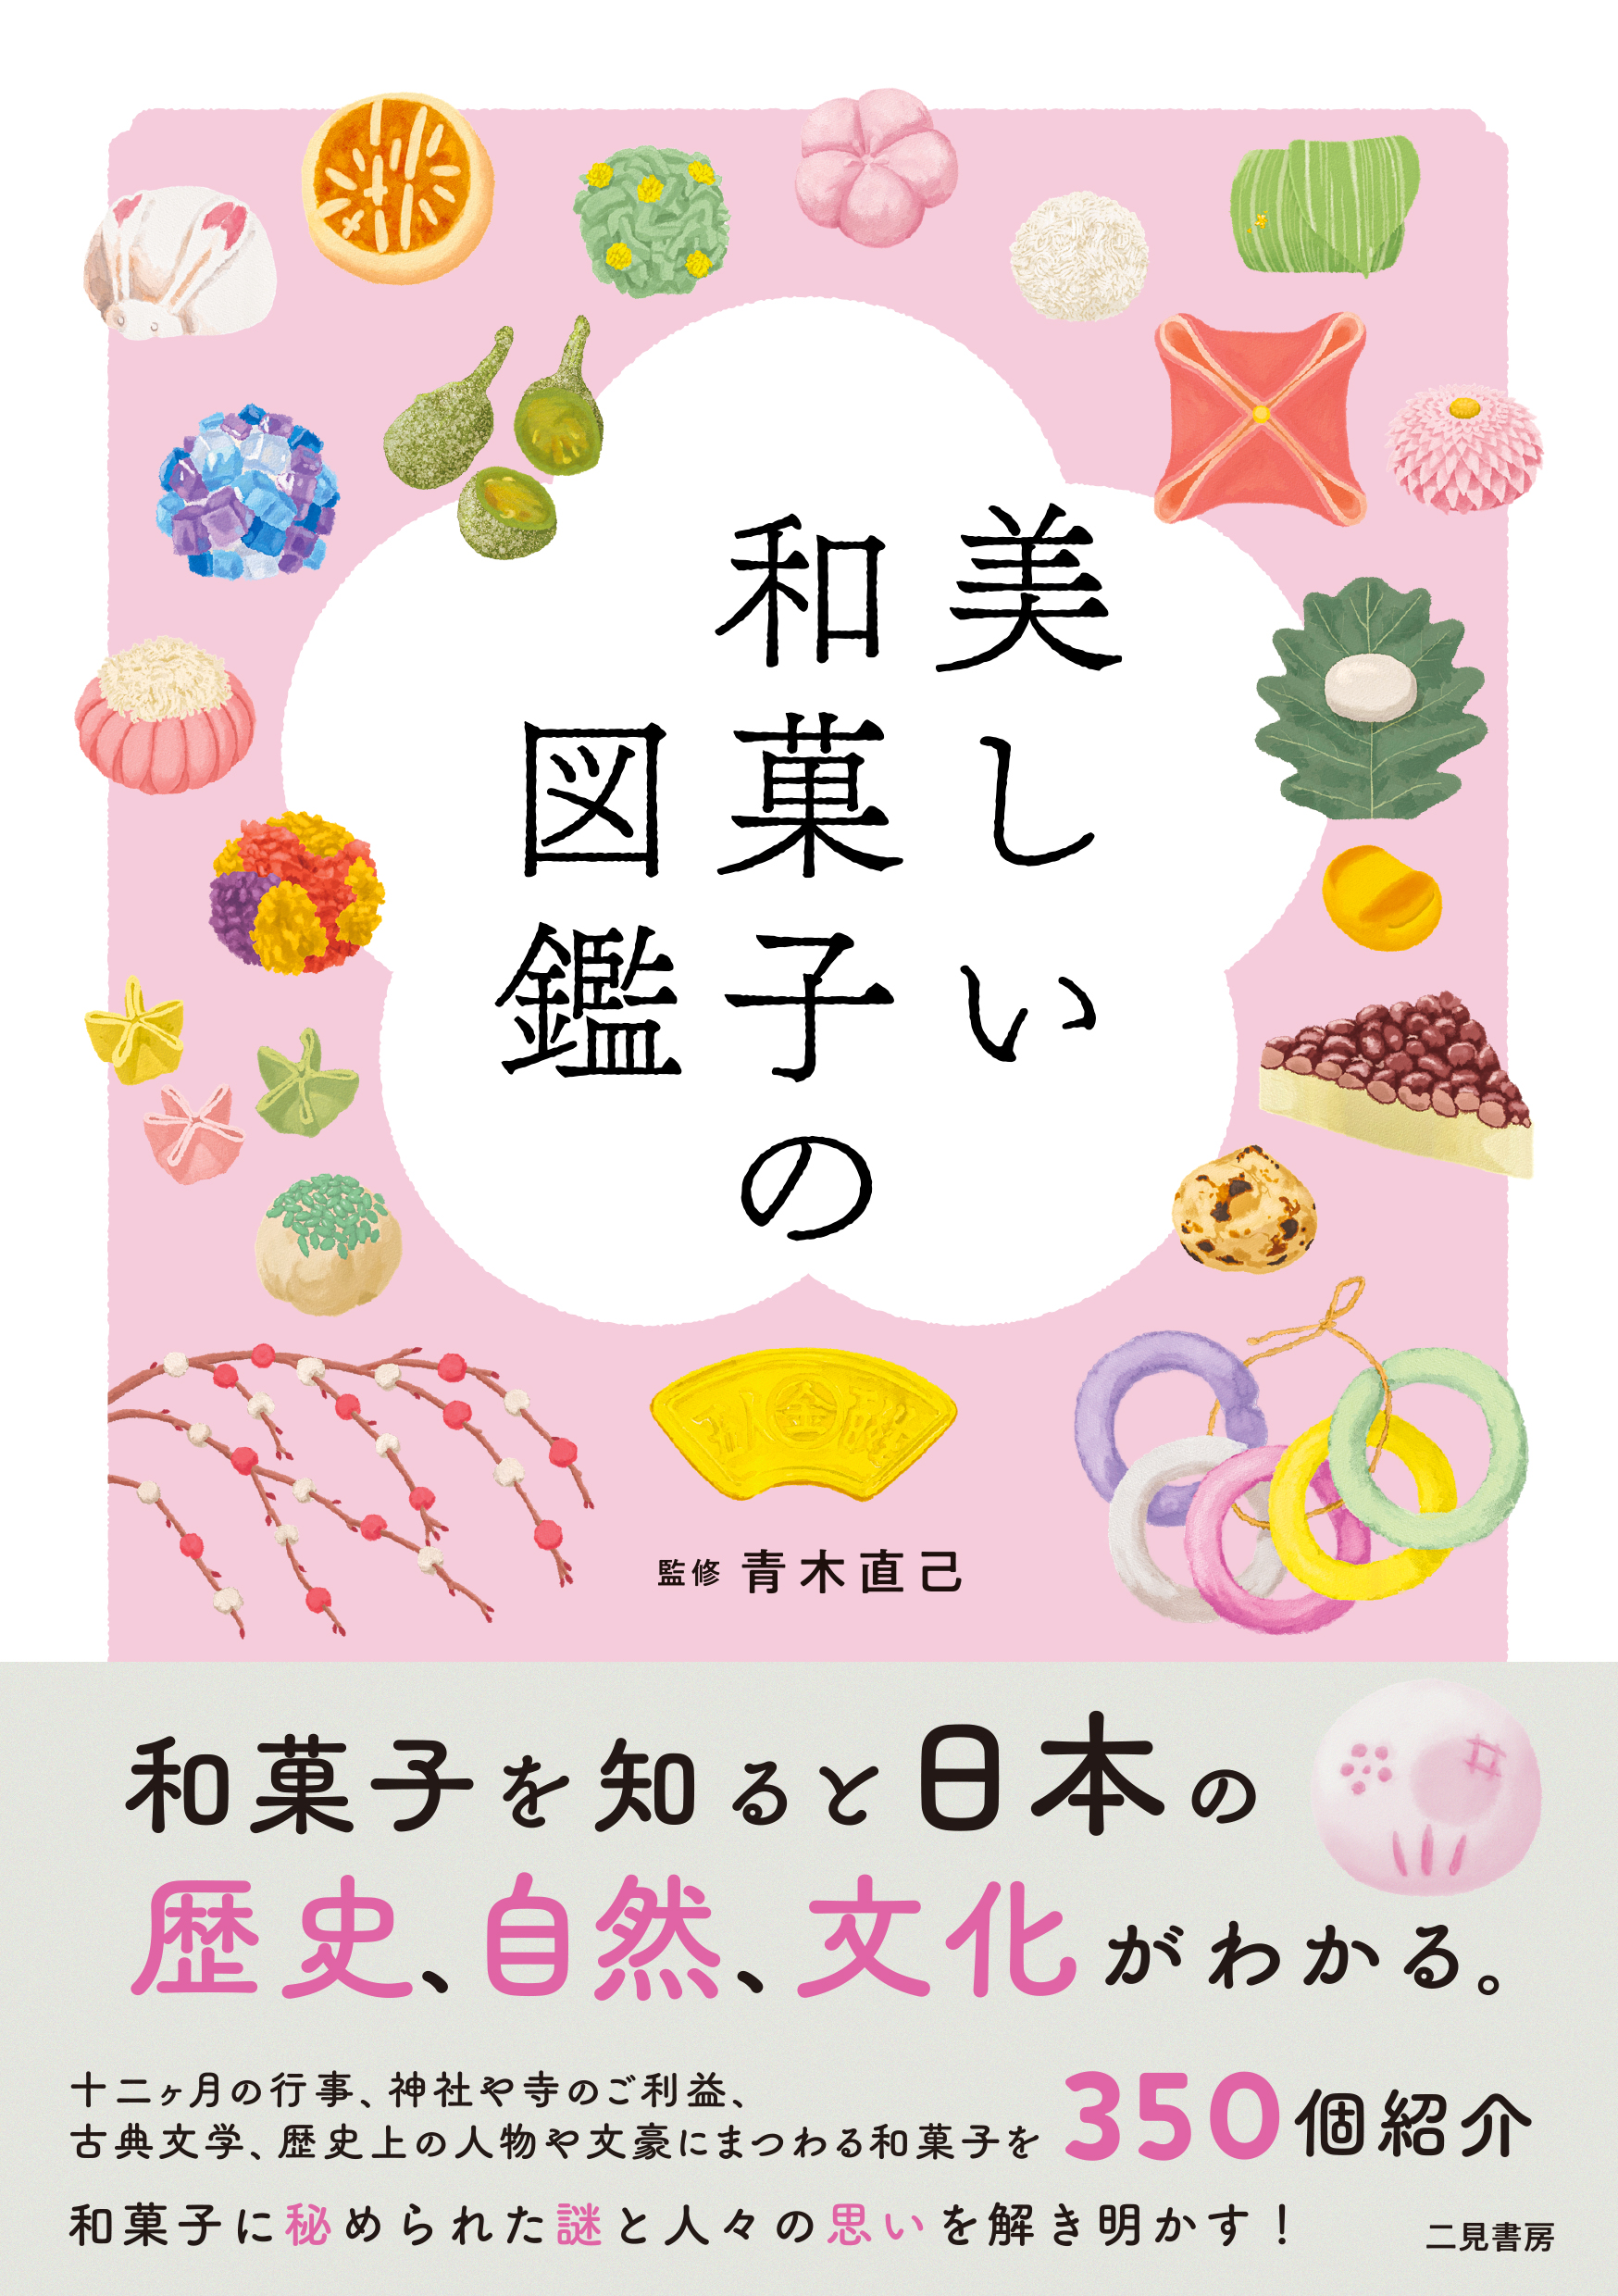 美しい和菓子の図鑑